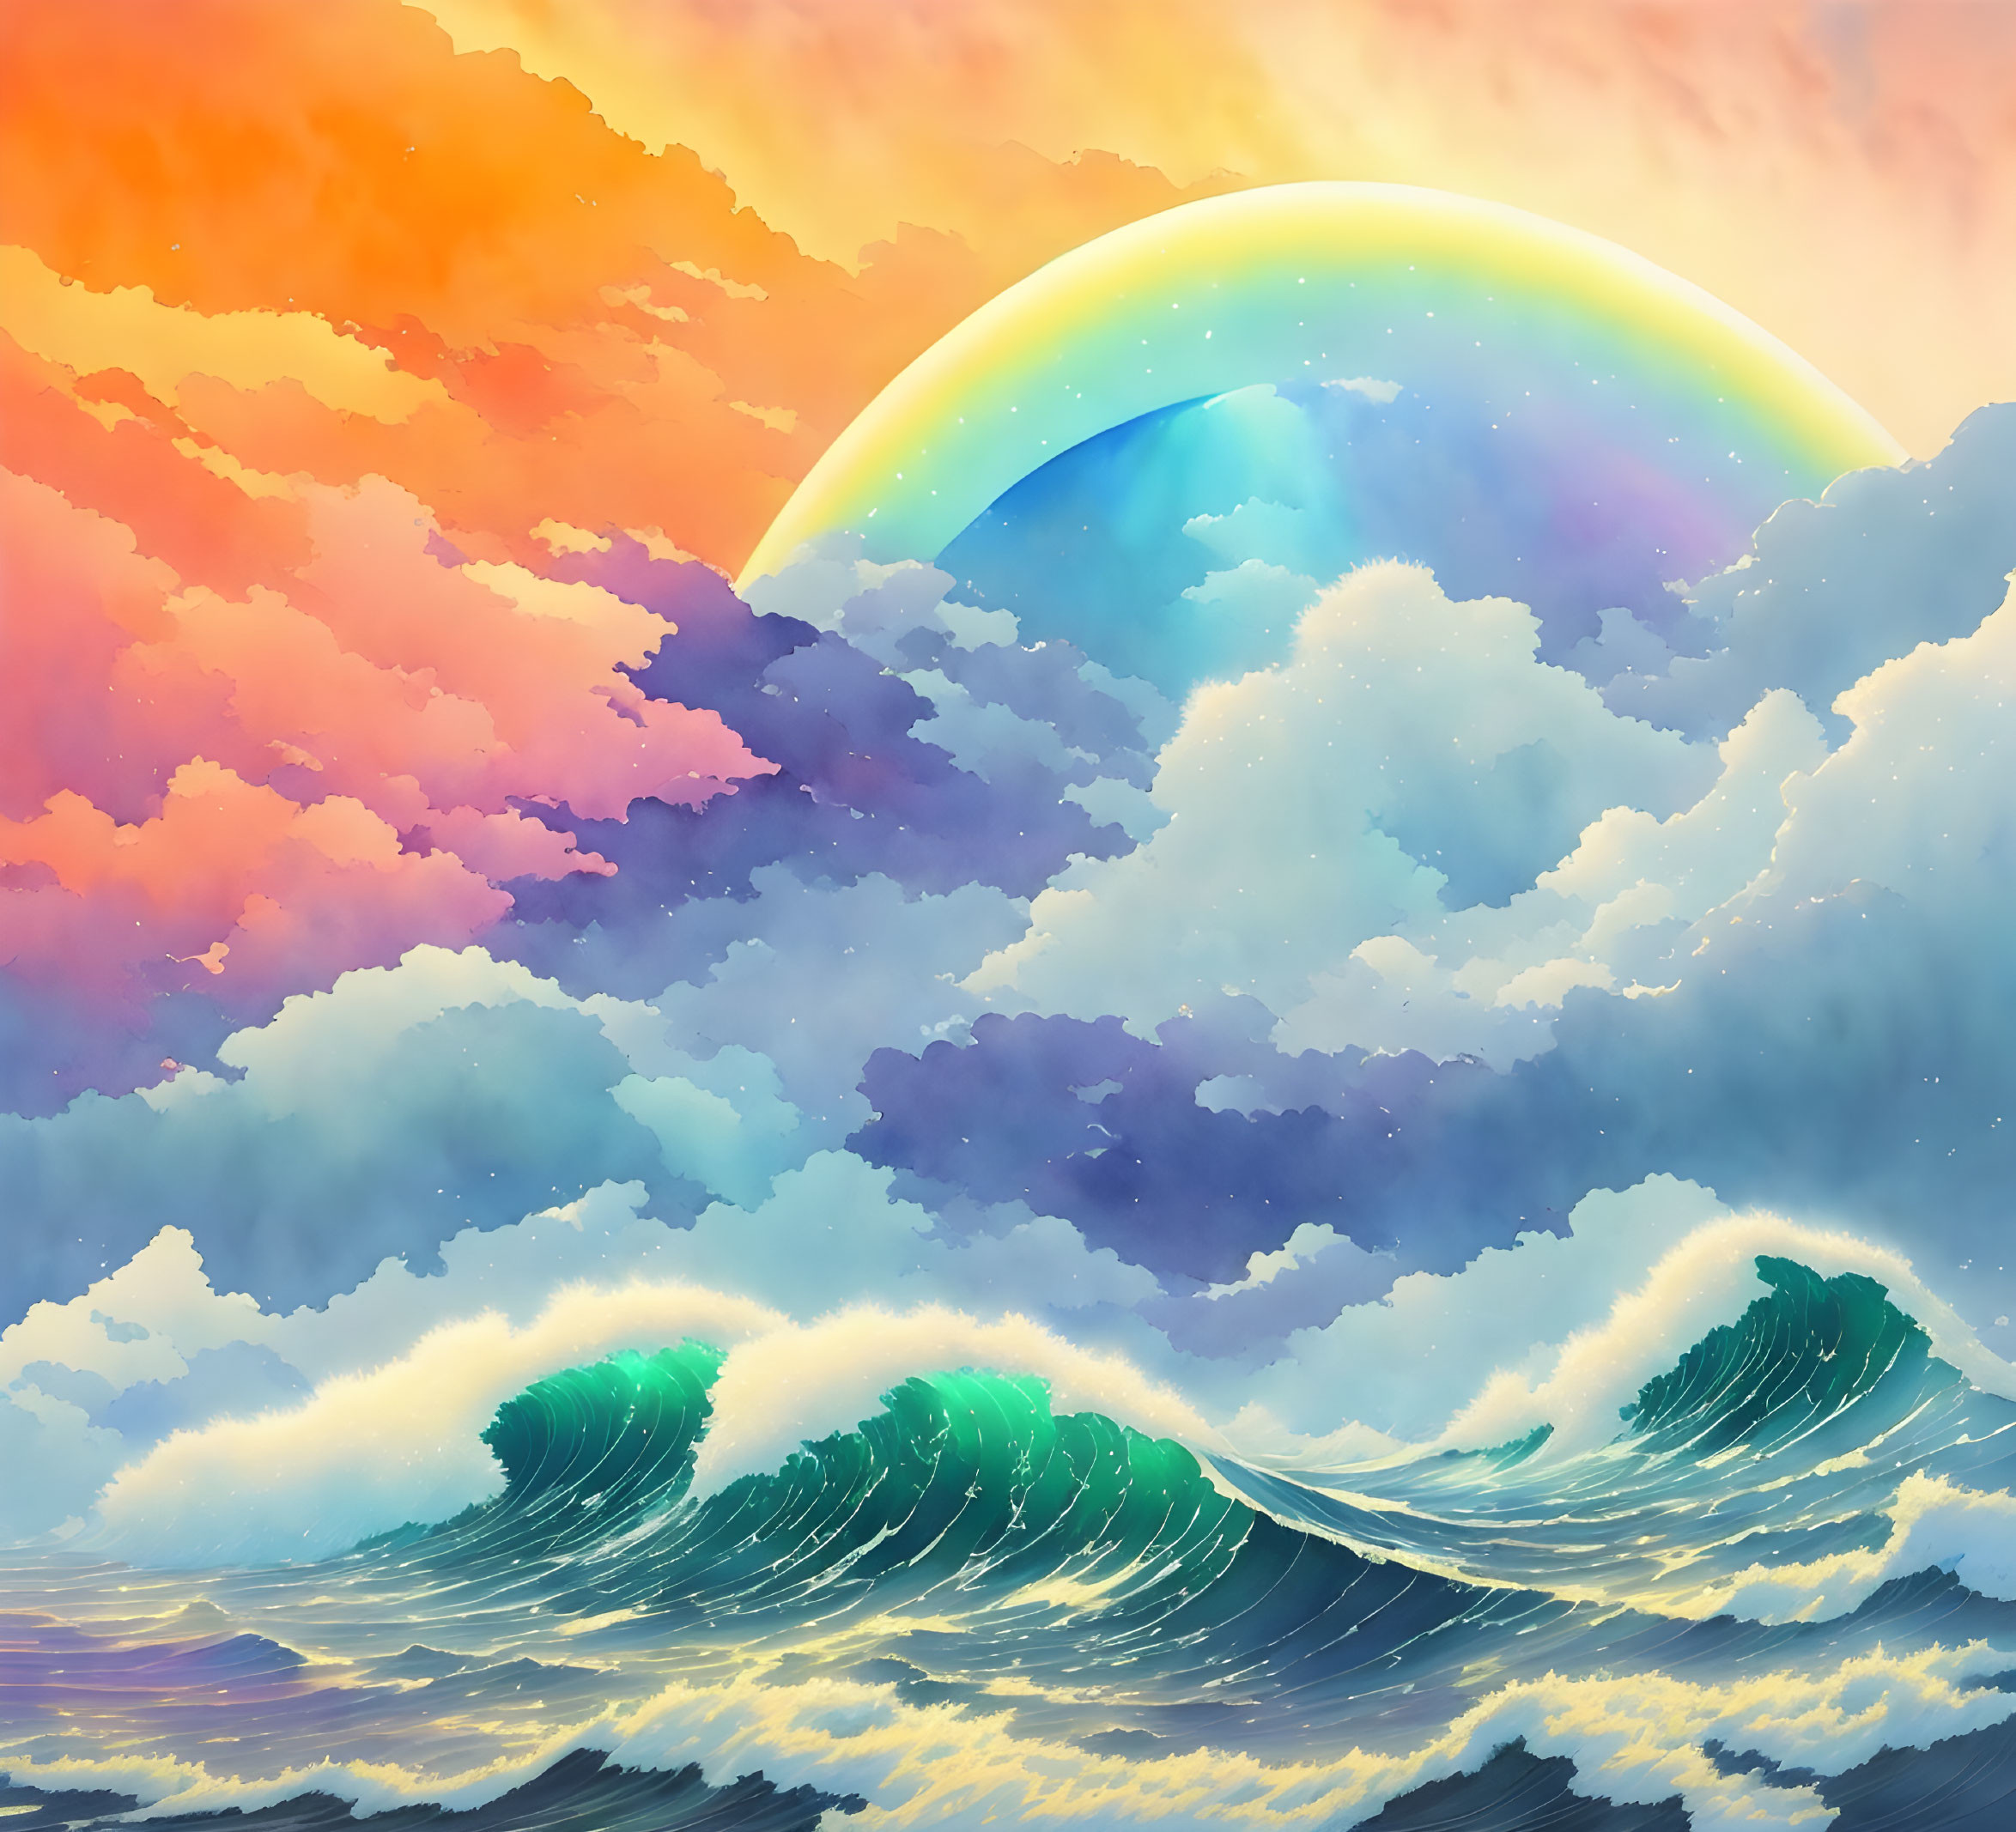 Stormy Seas and Rainbow Skies